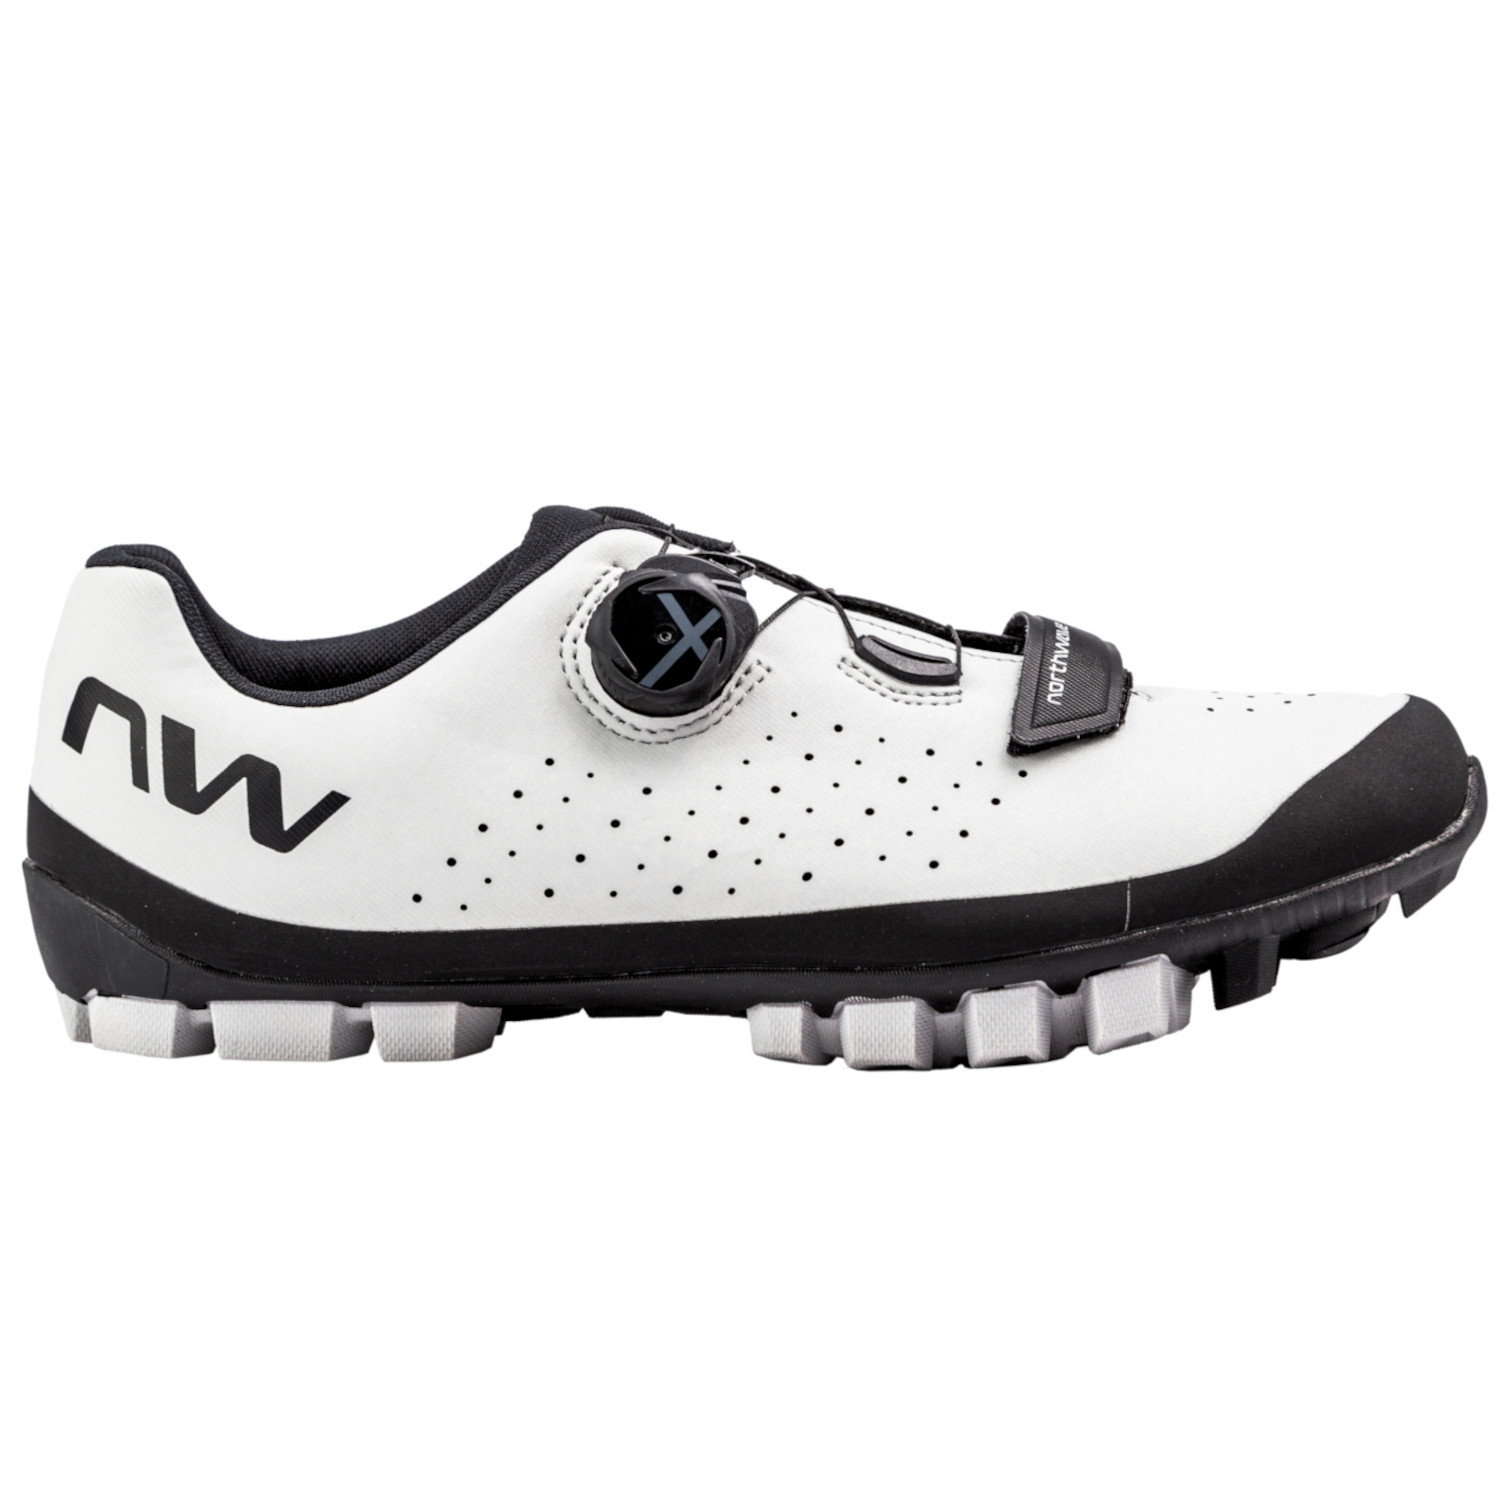 Image of Northwave Hammer Plus MTB Shoes Men - light grey/black 92